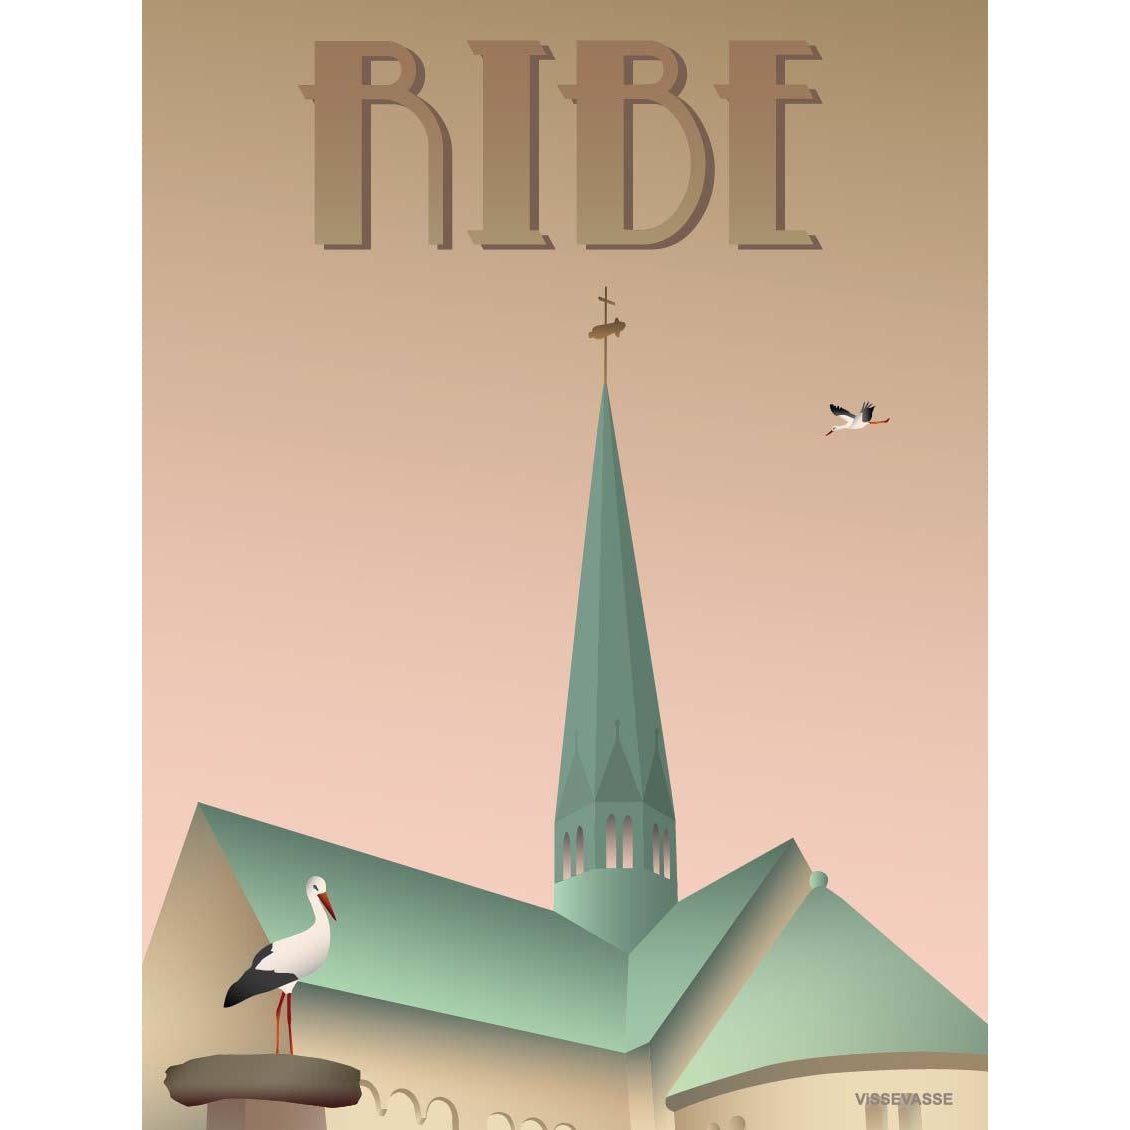 Vissevasse Ribe Storks Poster, 15x21 cm